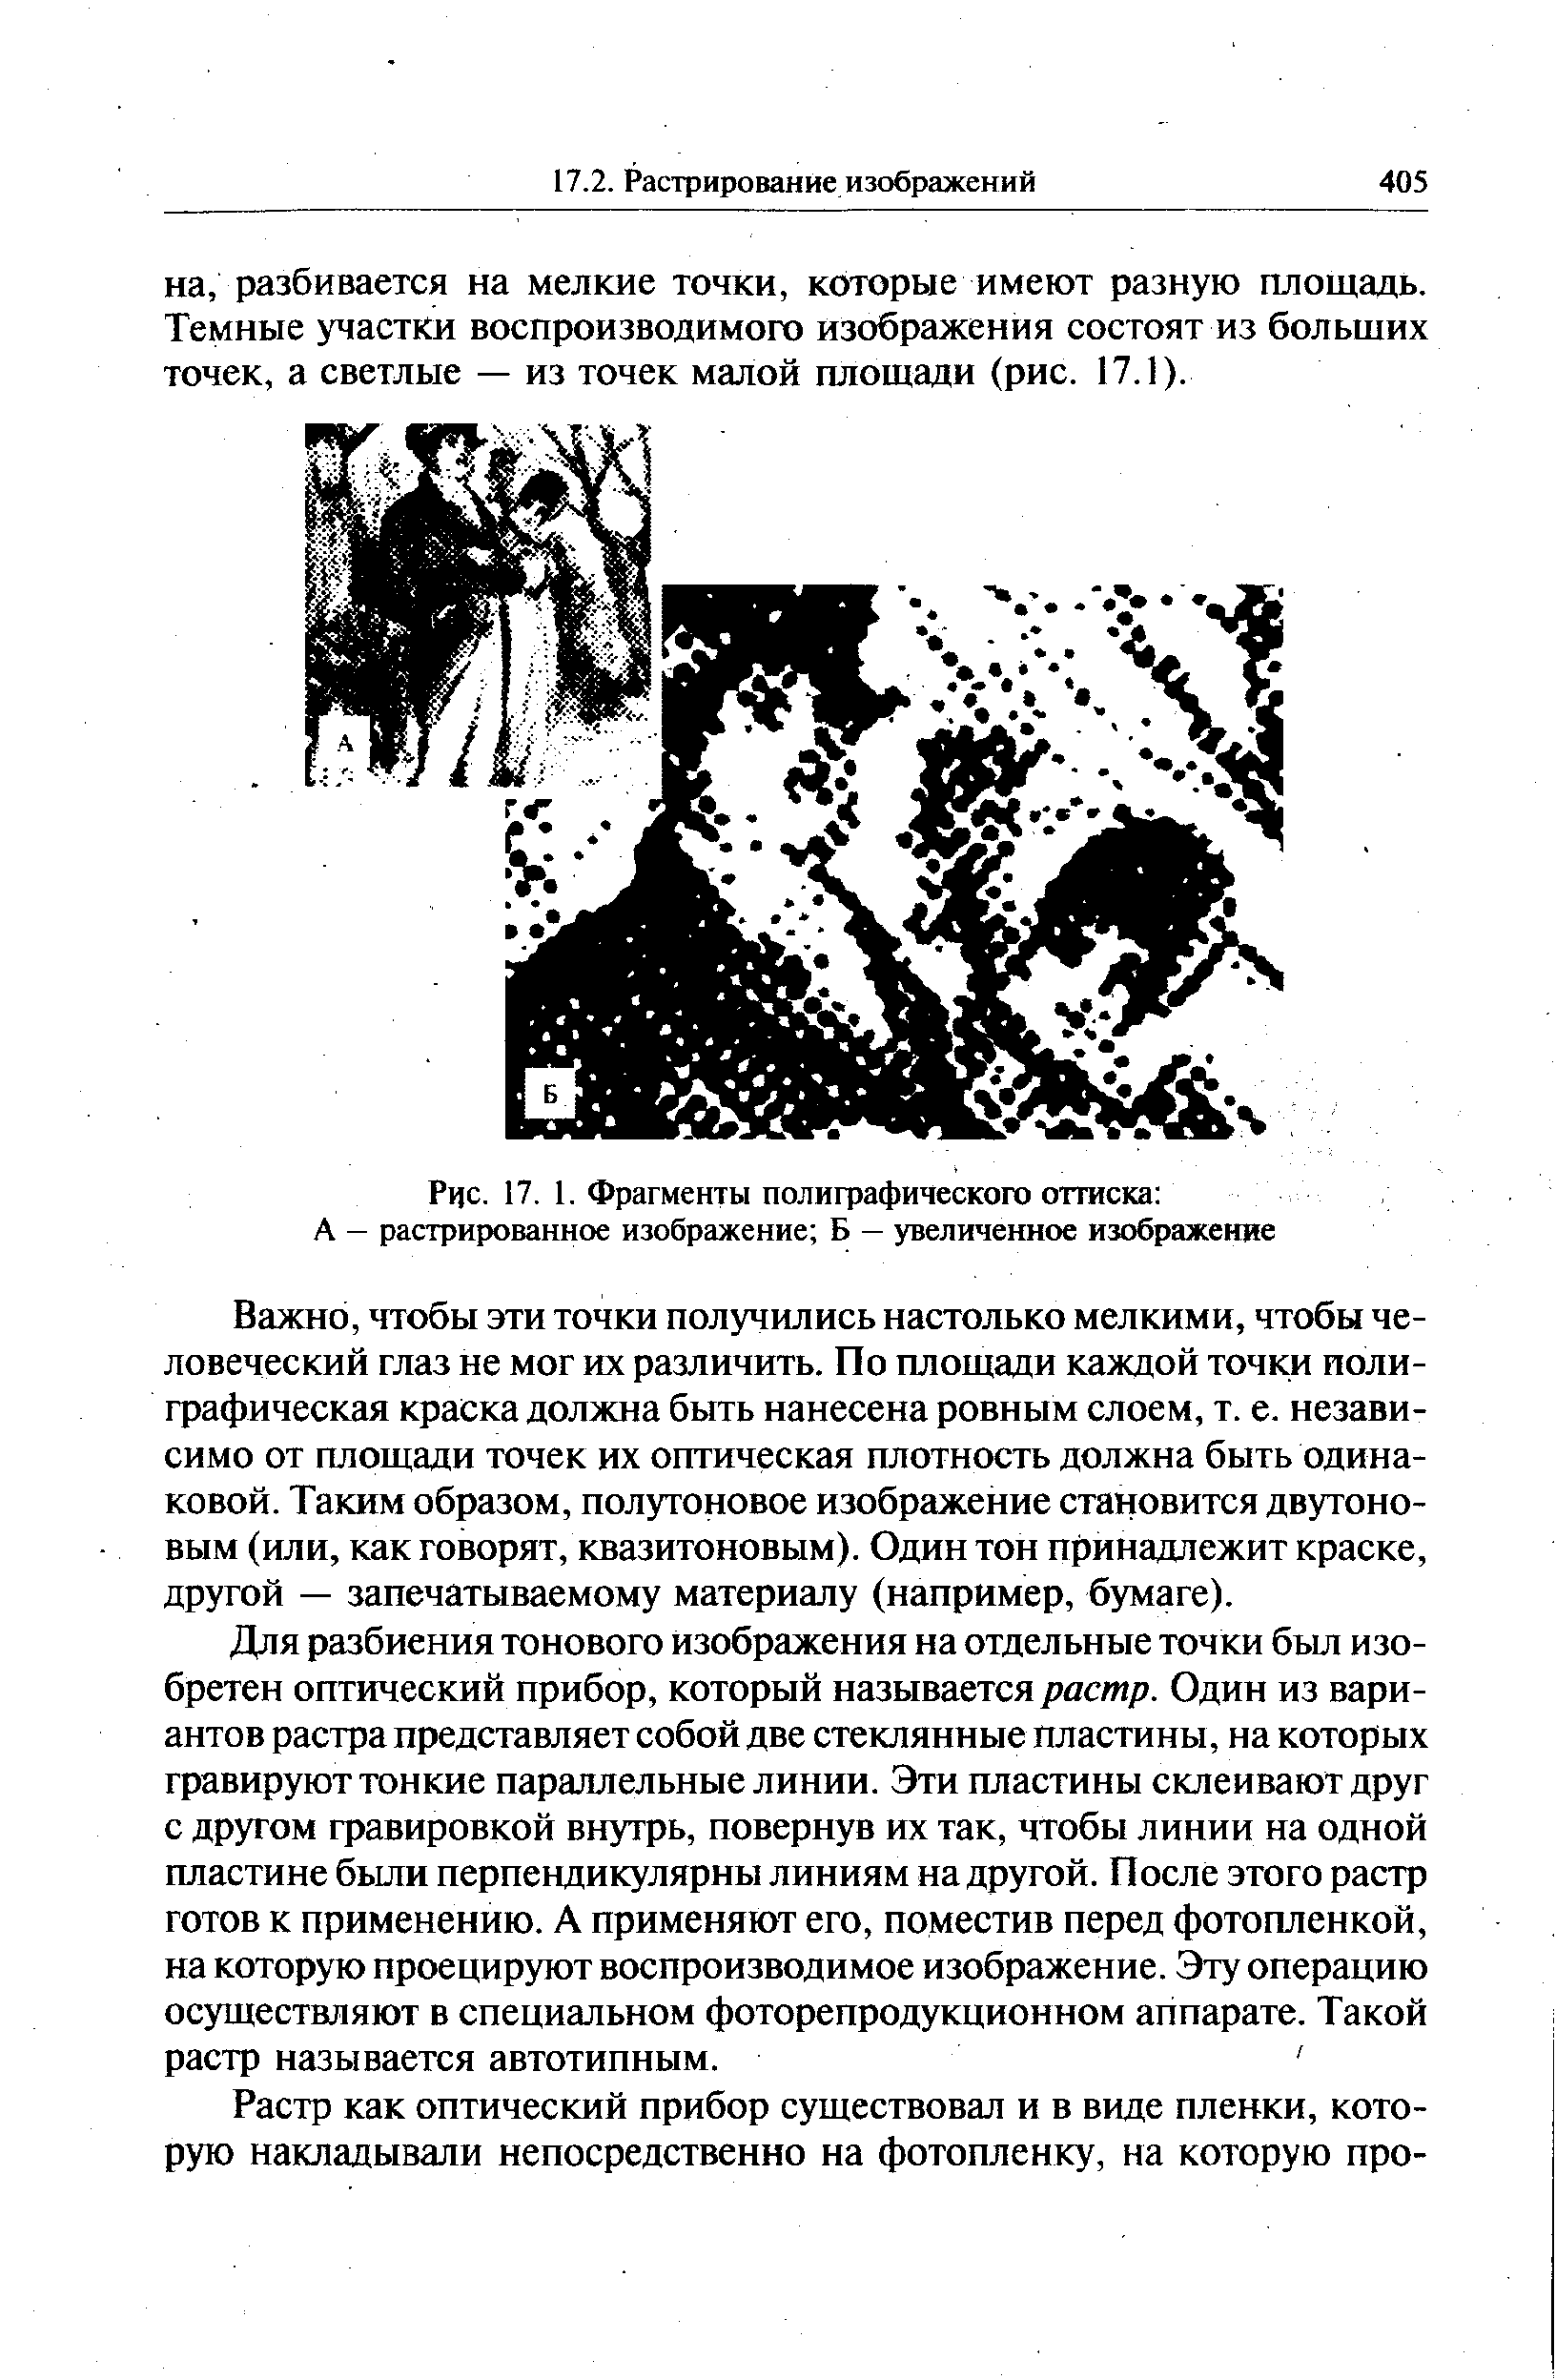 Рис. 17. 1. Фрагменты полиграфического оттиска А — растрированное изображение Б — увеличенное изображение
